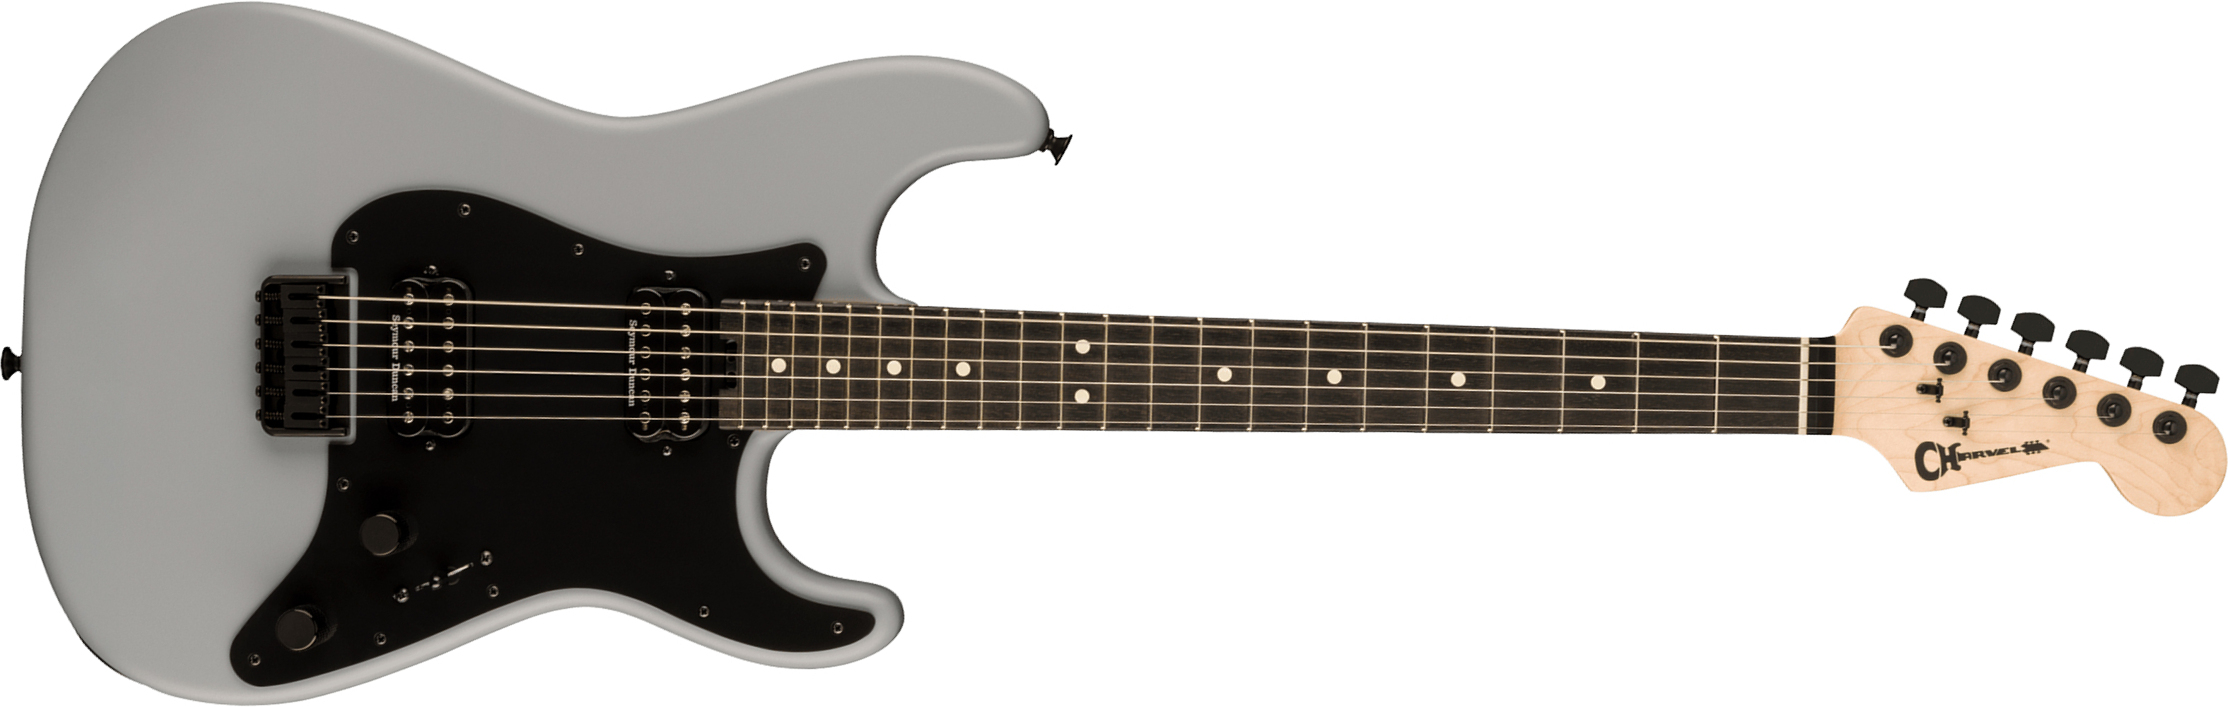 Charvel So-cal Style 1 Hh Ht E Pro-mod 2h Seymour Duncan Eb - Primer Gray - E-Gitarre in Str-Form - Main picture